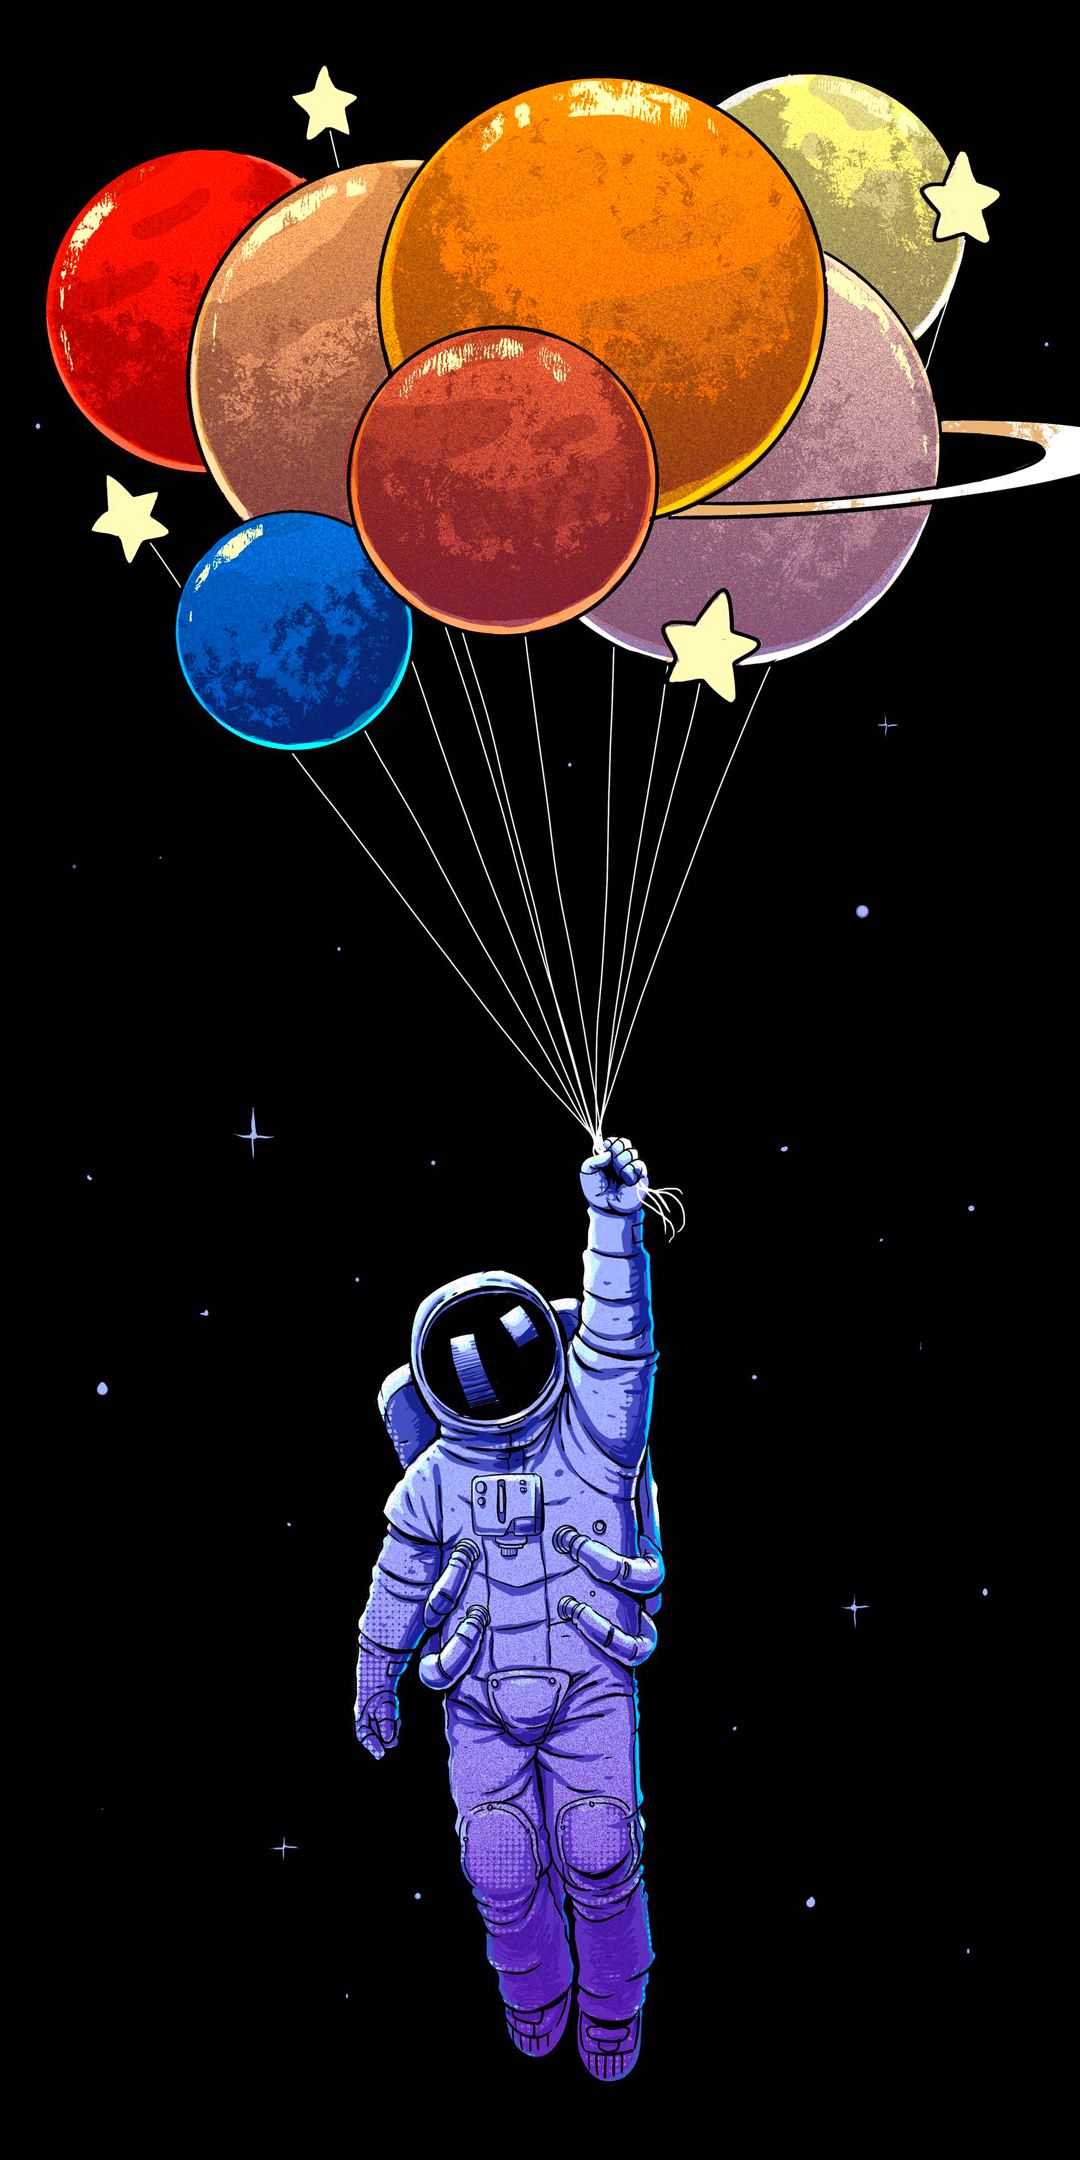 1372325 免費下載壁紙 科幻, 宇航员, 宇航服, 气球 屏保和圖片